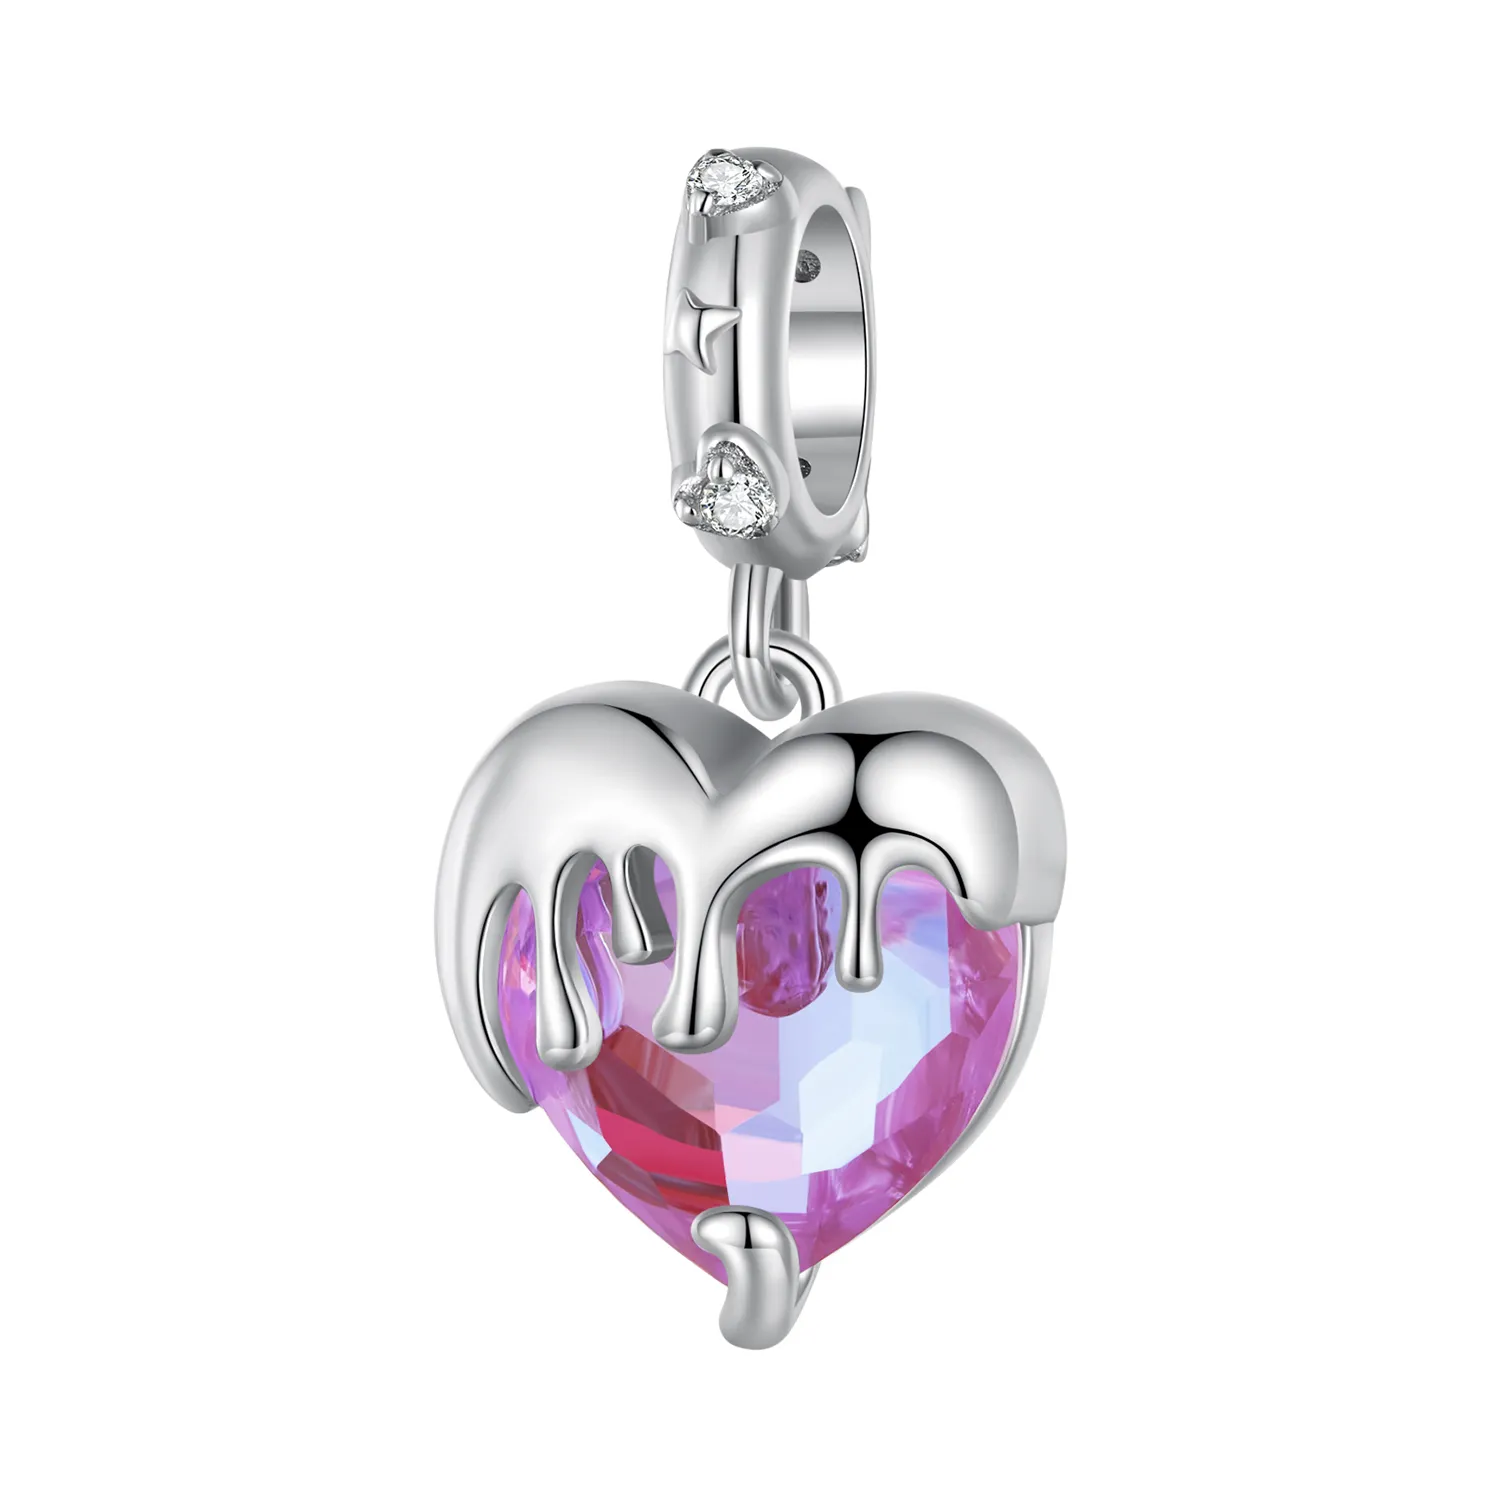 Pandantiv stil Pandora în formă de inimă topită pentru fetițe - SCC2471